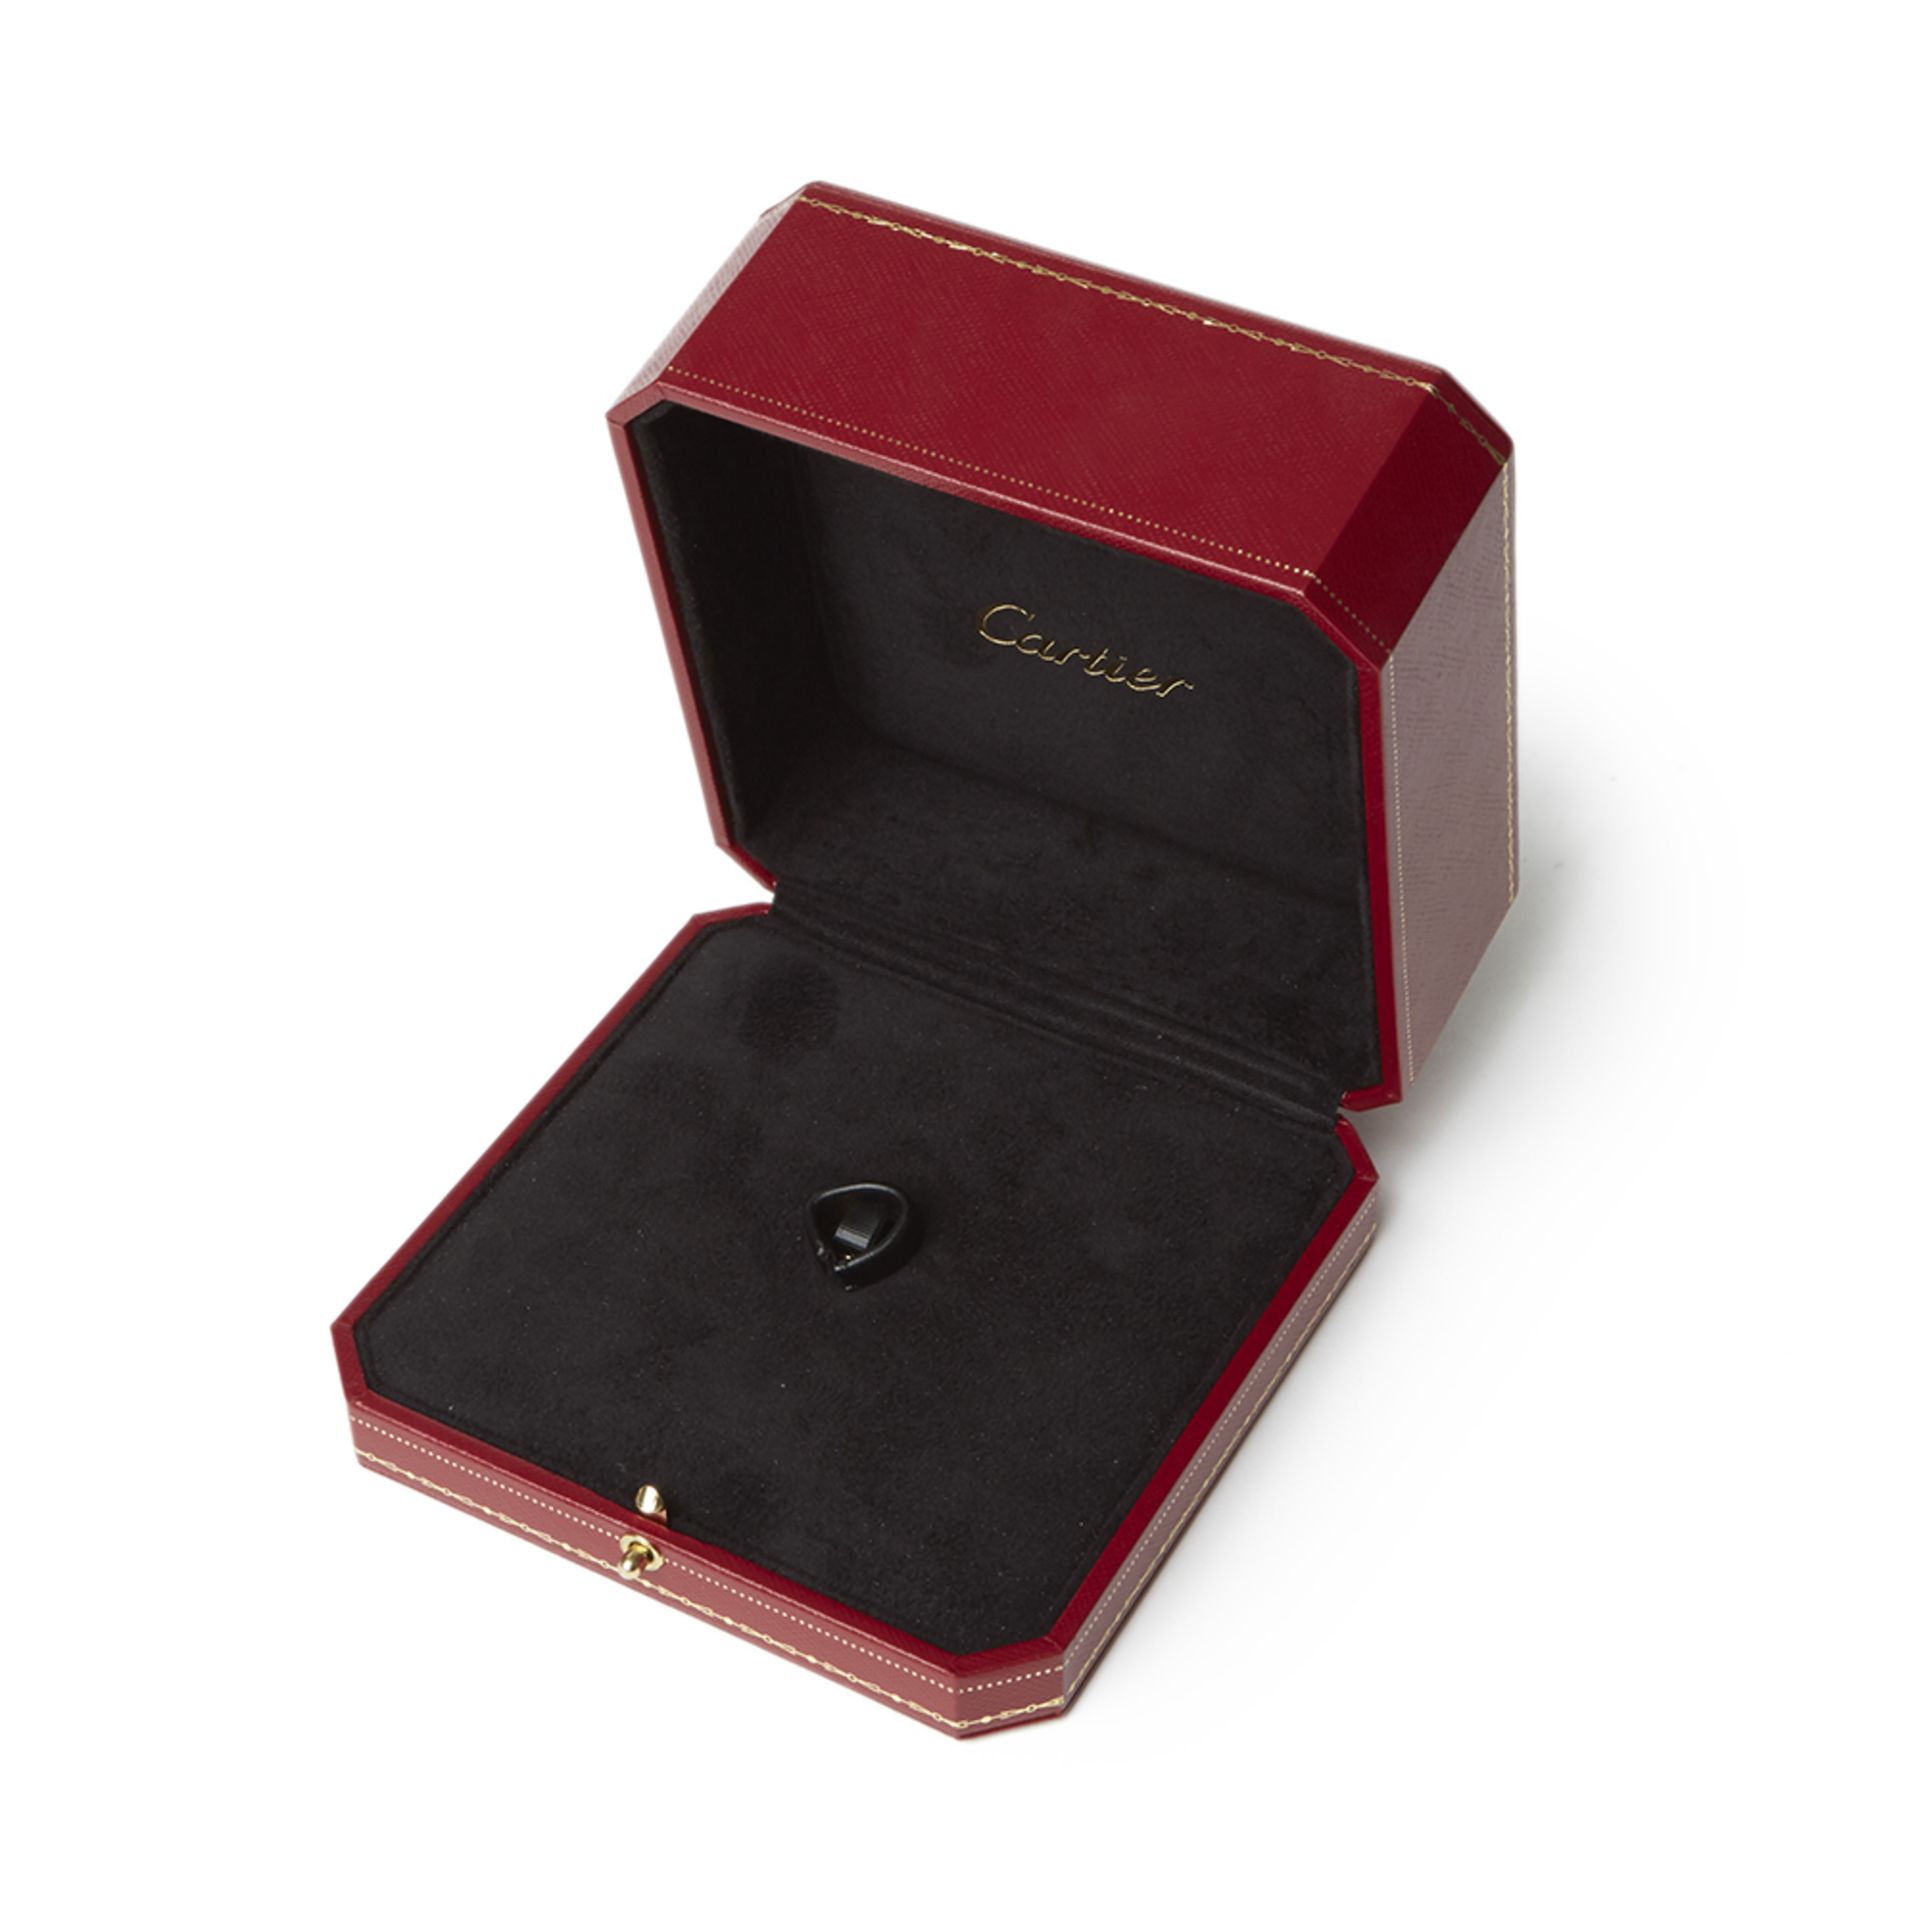 Cartier, 18k Rose Gold Smoky Quartz & Diamond Lotus Ring - Image 8 of 9